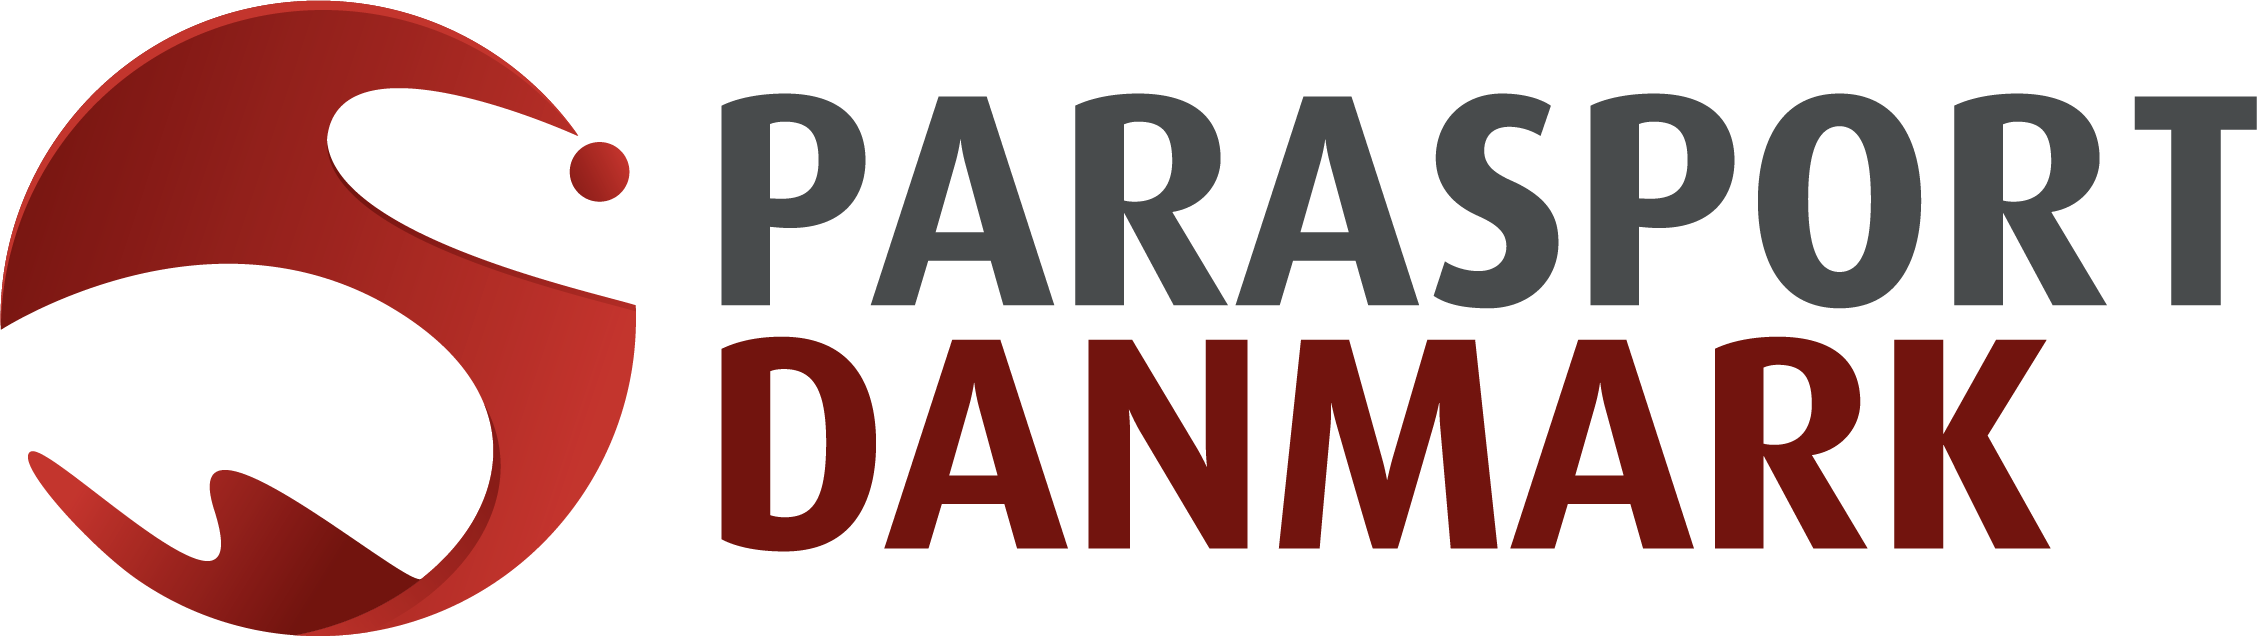 00 Parasport Danmark Logo Farver DK - Version 2 - uden hovedsponsorer